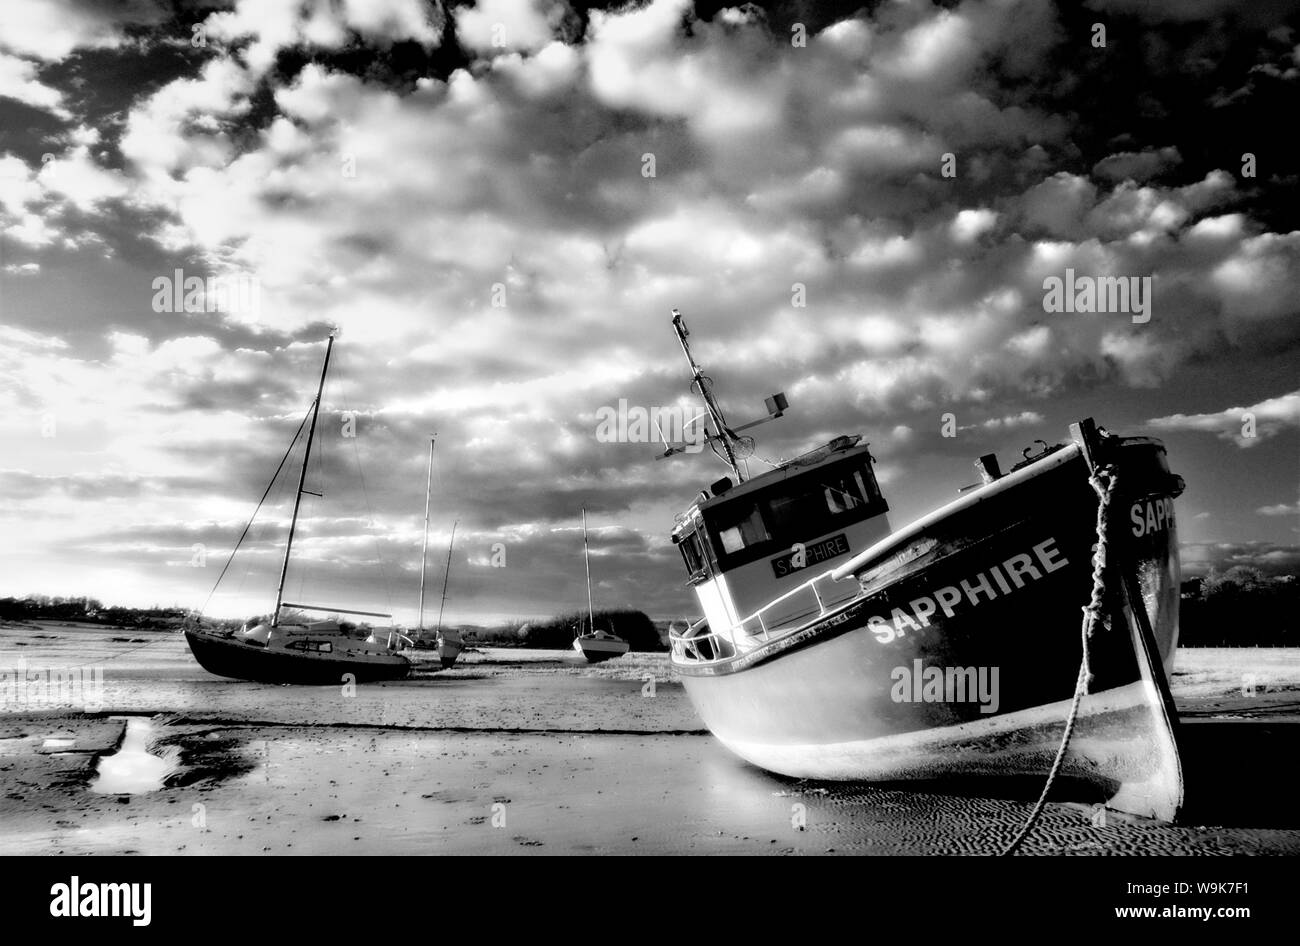 Infrarotbild von Booten auf Aln-Mündung bei Ebbe, Alnmouth, in der Nähe von Alnwick, Northumberland, England, Vereinigtes Königreich, Europa Stockfoto